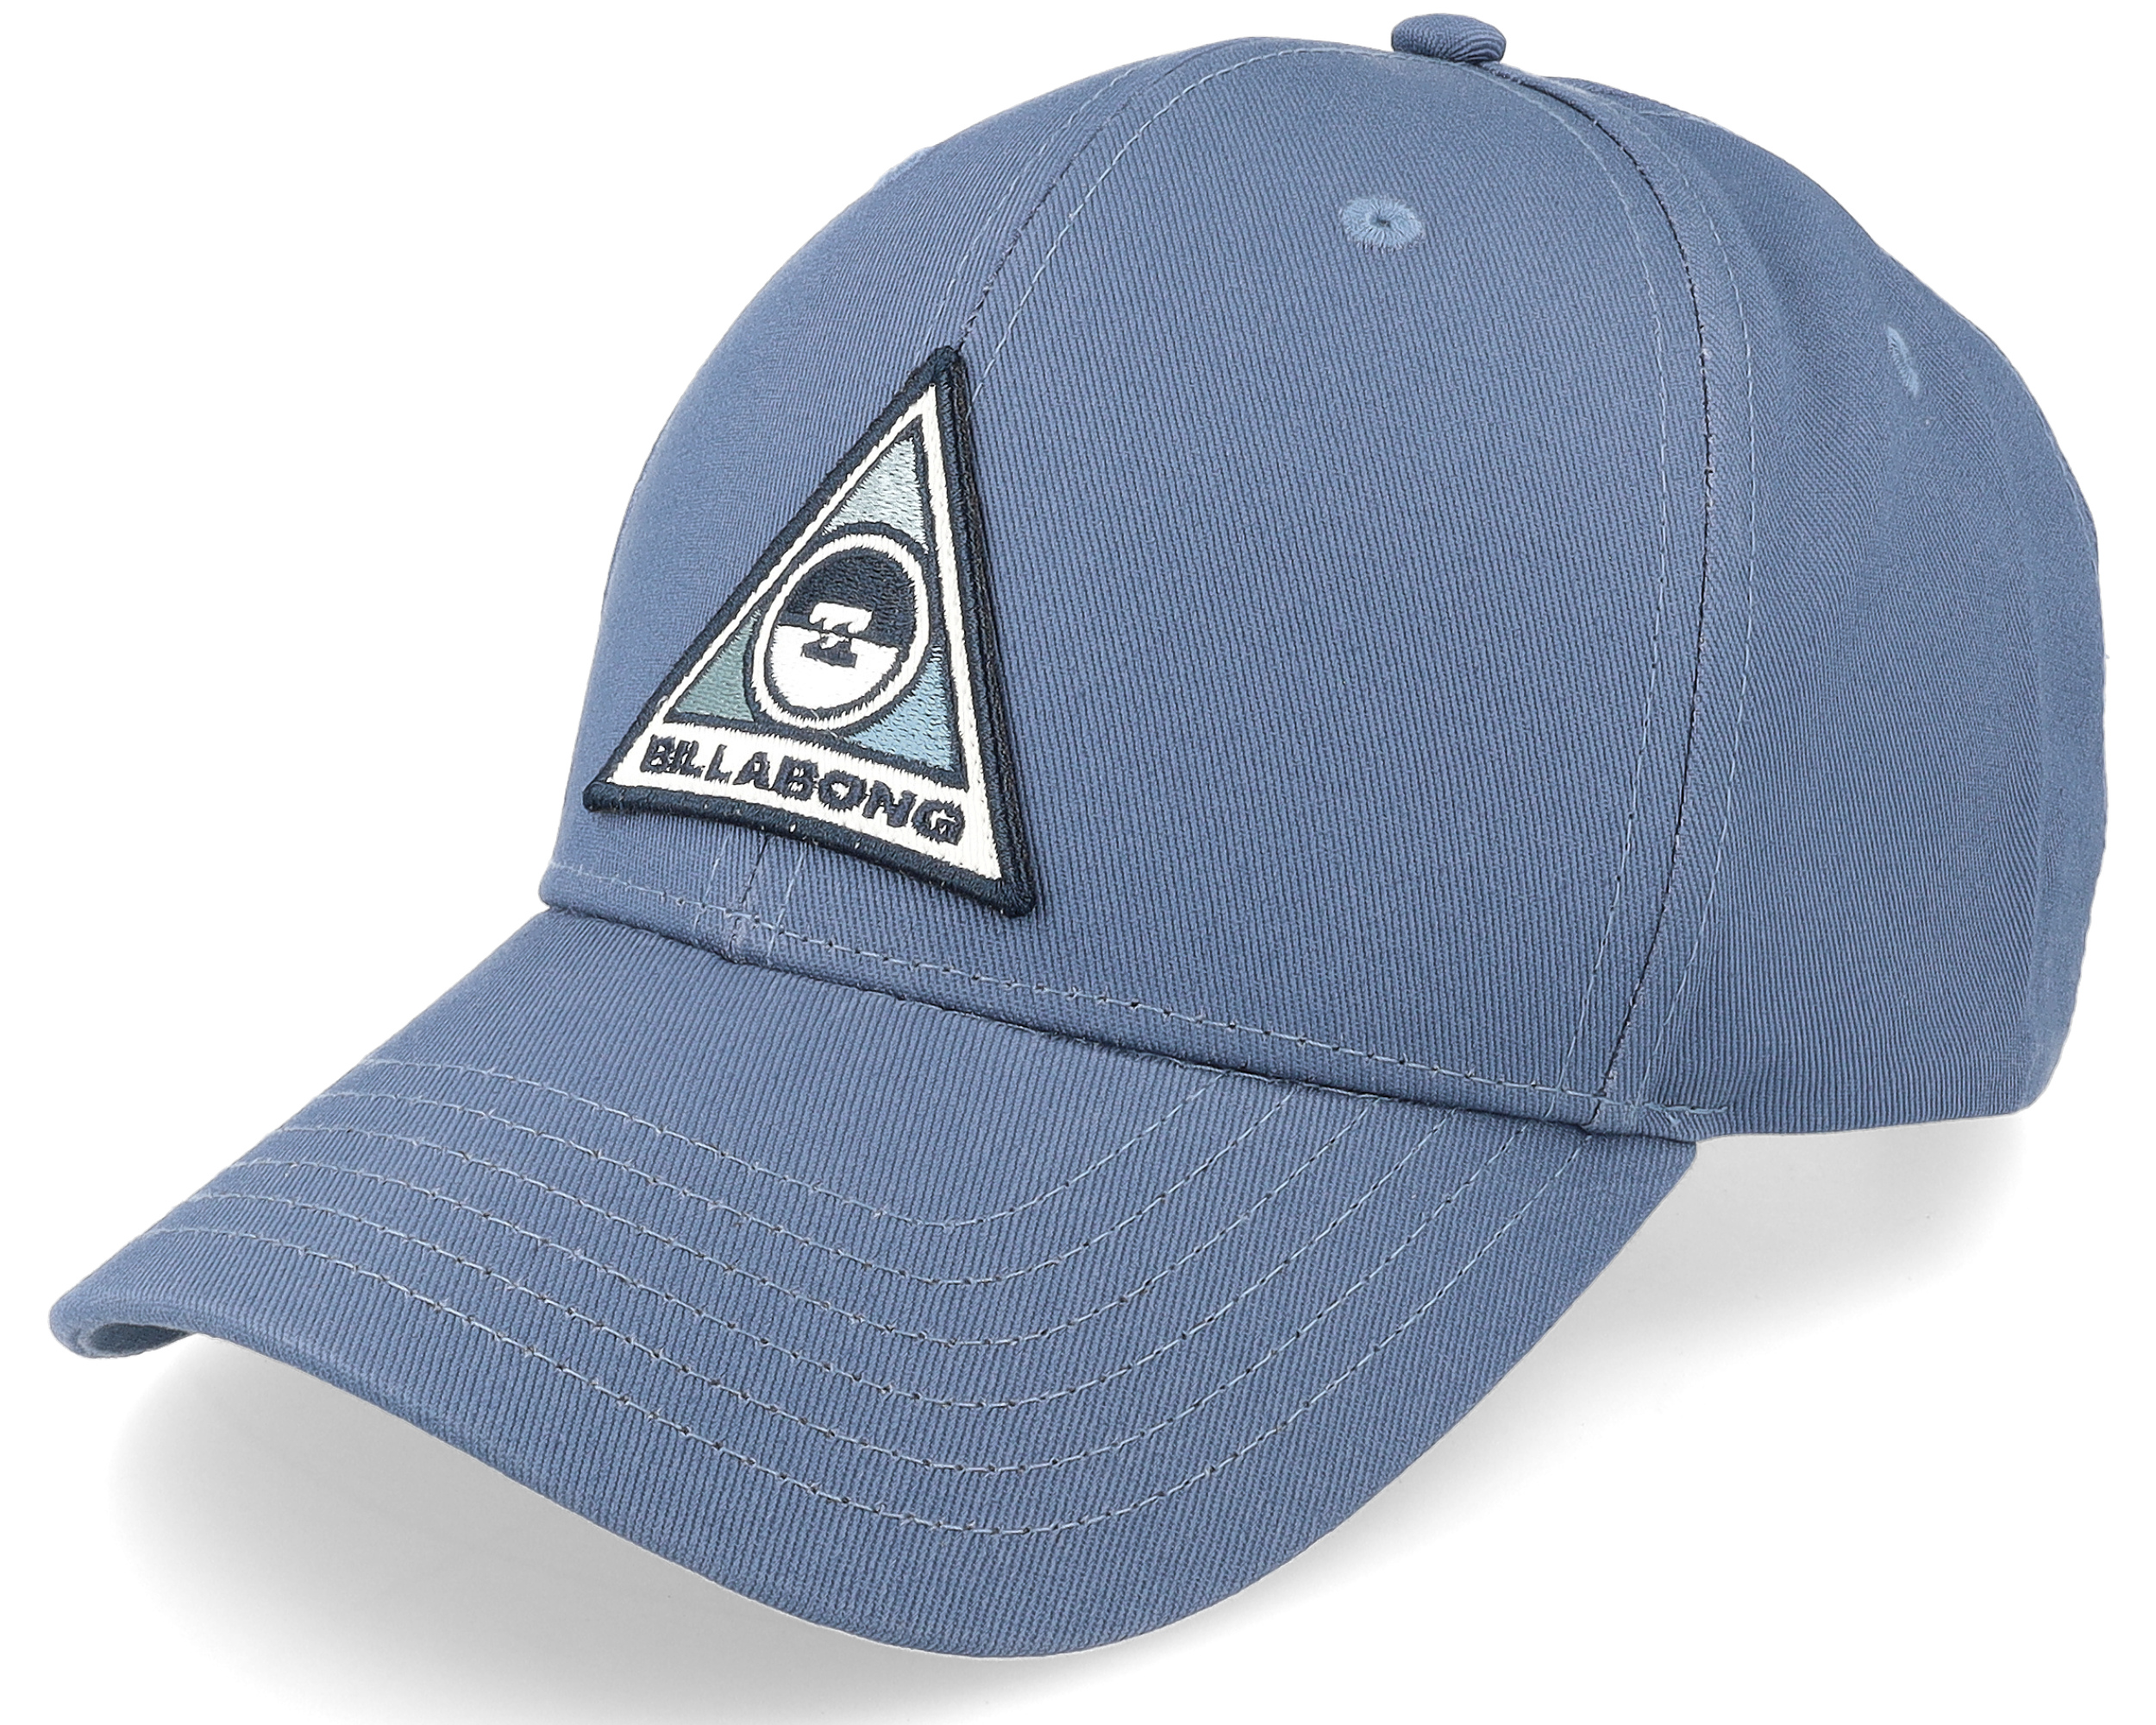 Adjustable Billabong Walled cap - Blue Washed